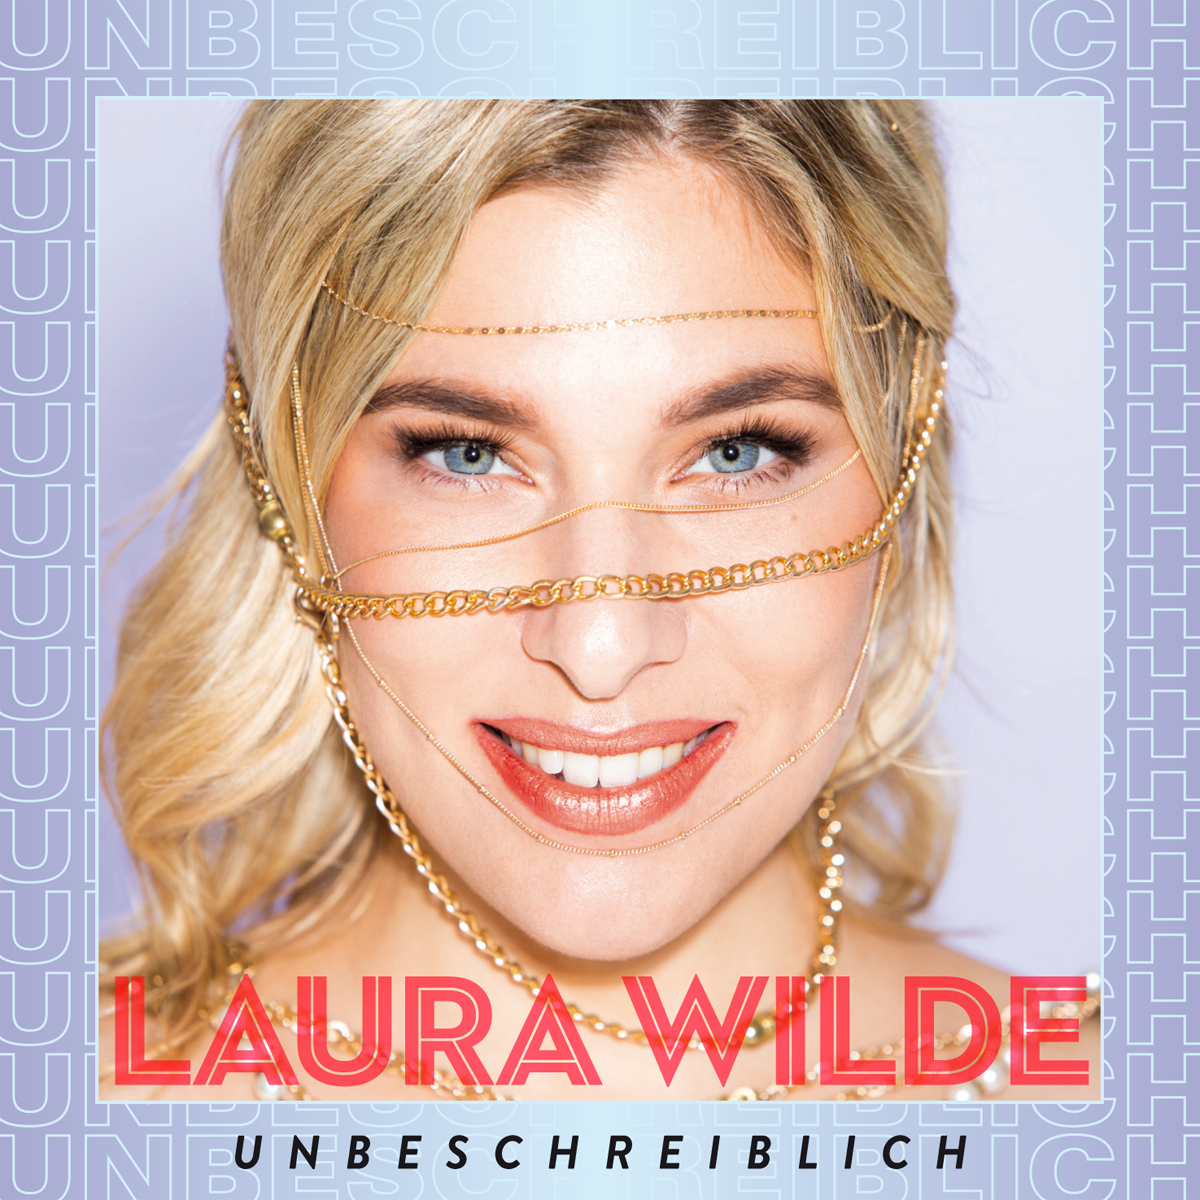 Laura Wilde - Unbeschreiblich (2021) 